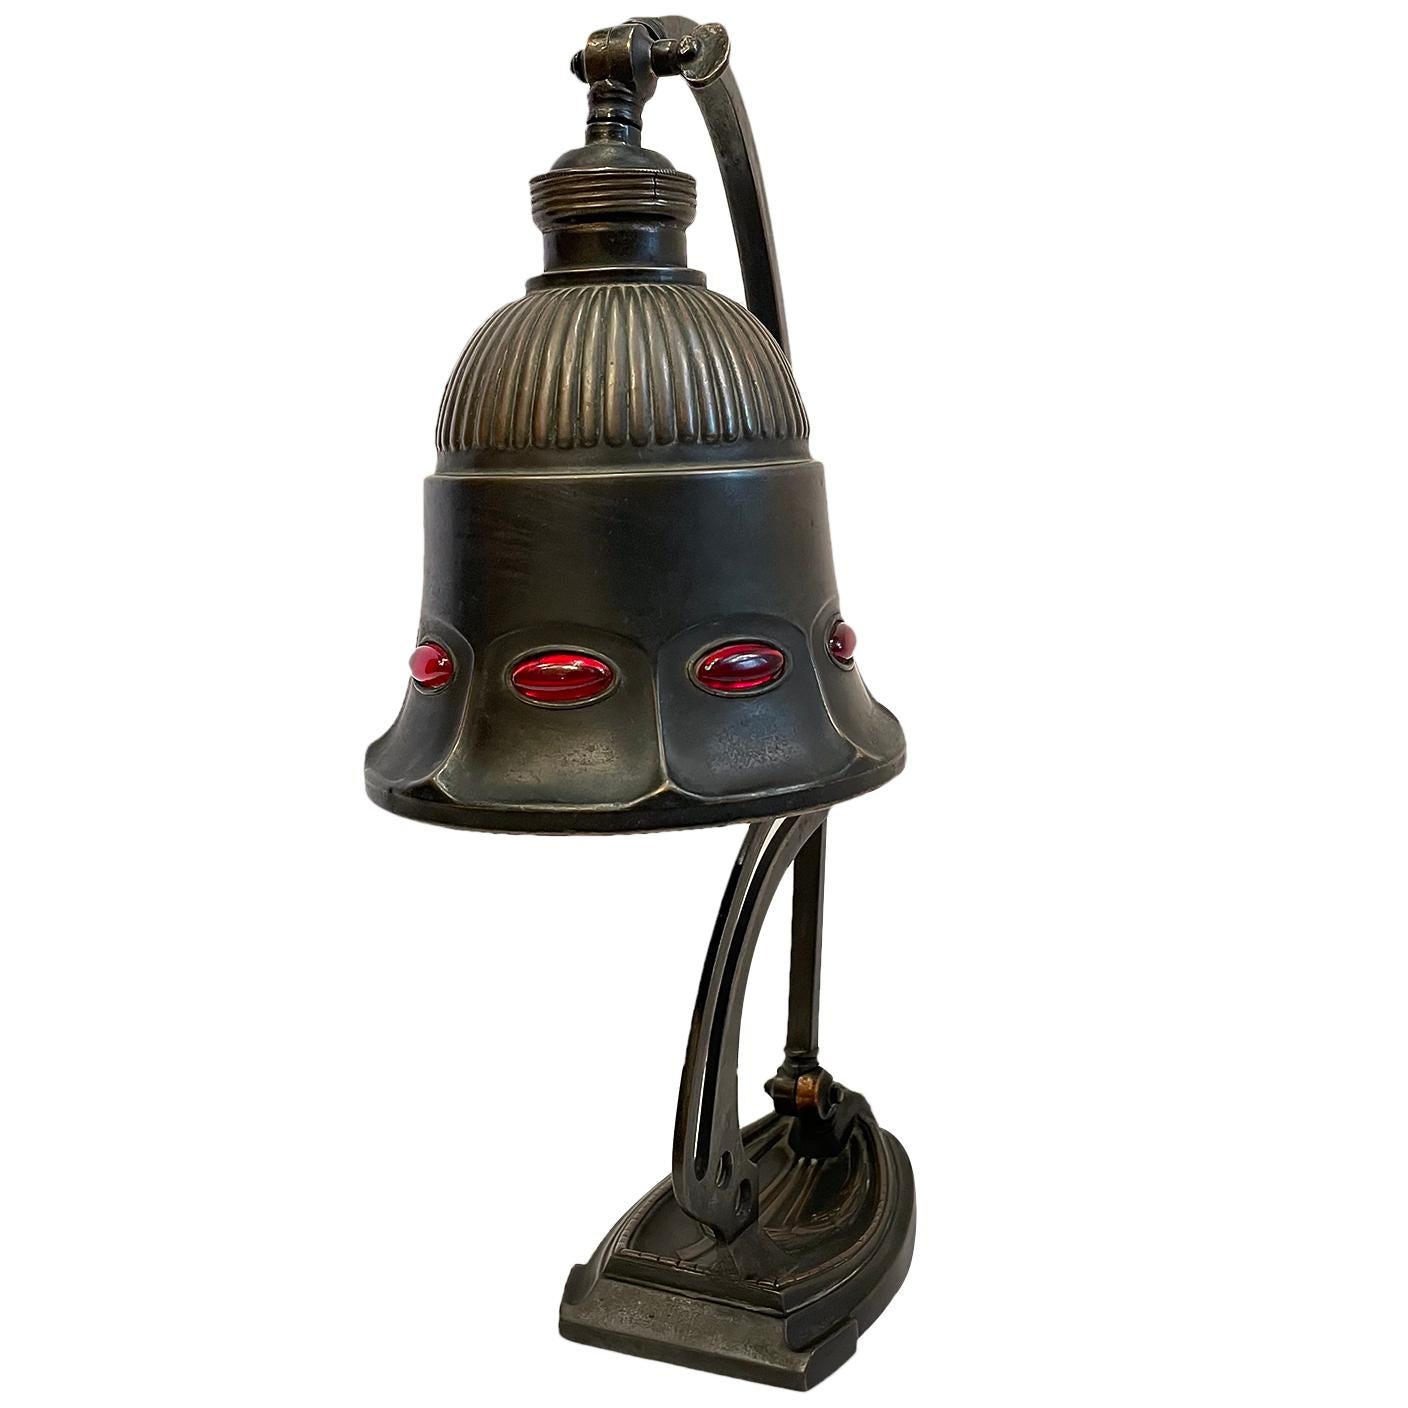 Lampe de bureau ajustable anglaise datant d'environ 1900 avec des inserts en verre rubis.

Mesures :
Hauteur : 14.25